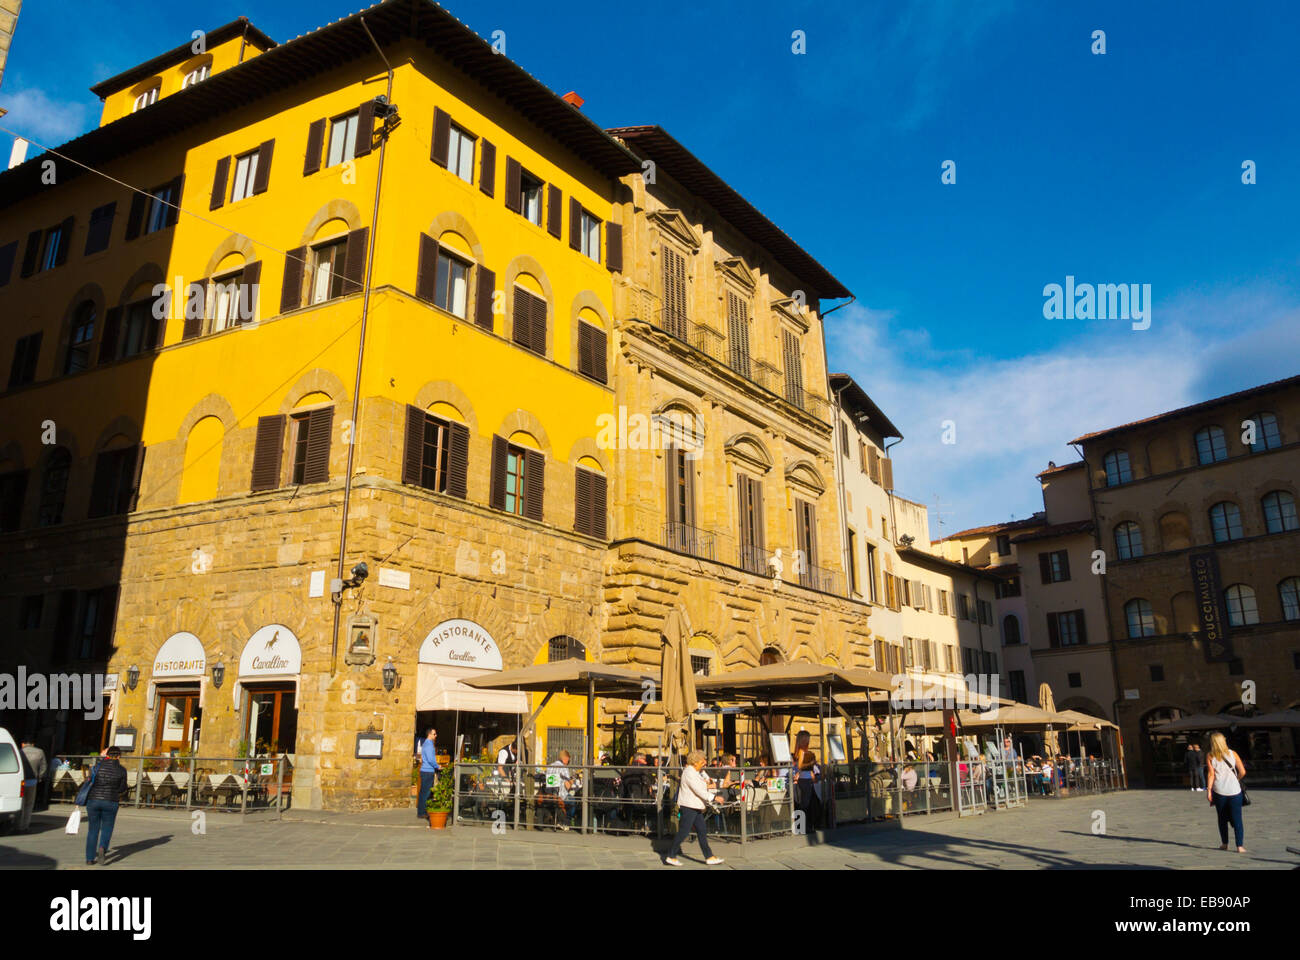 Piazza della Signoria square, Florence, Tuscany, Italy Stock Photo